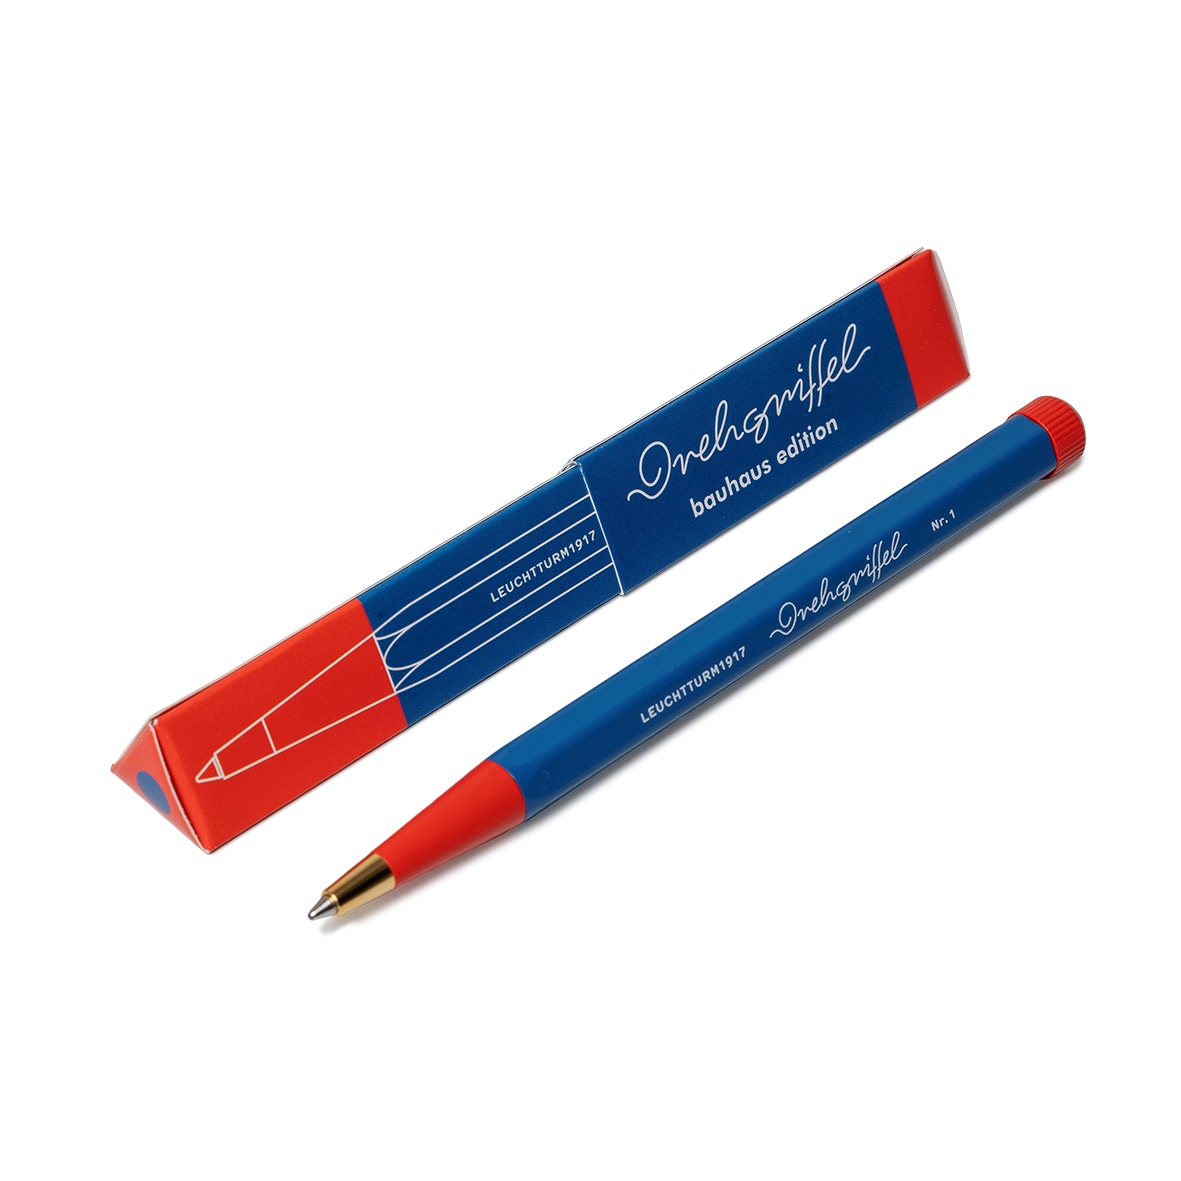 Ручка шариковая Leuchtturm1917 Bauhaus Edition чернила синие корпус Синий королевский+Красный